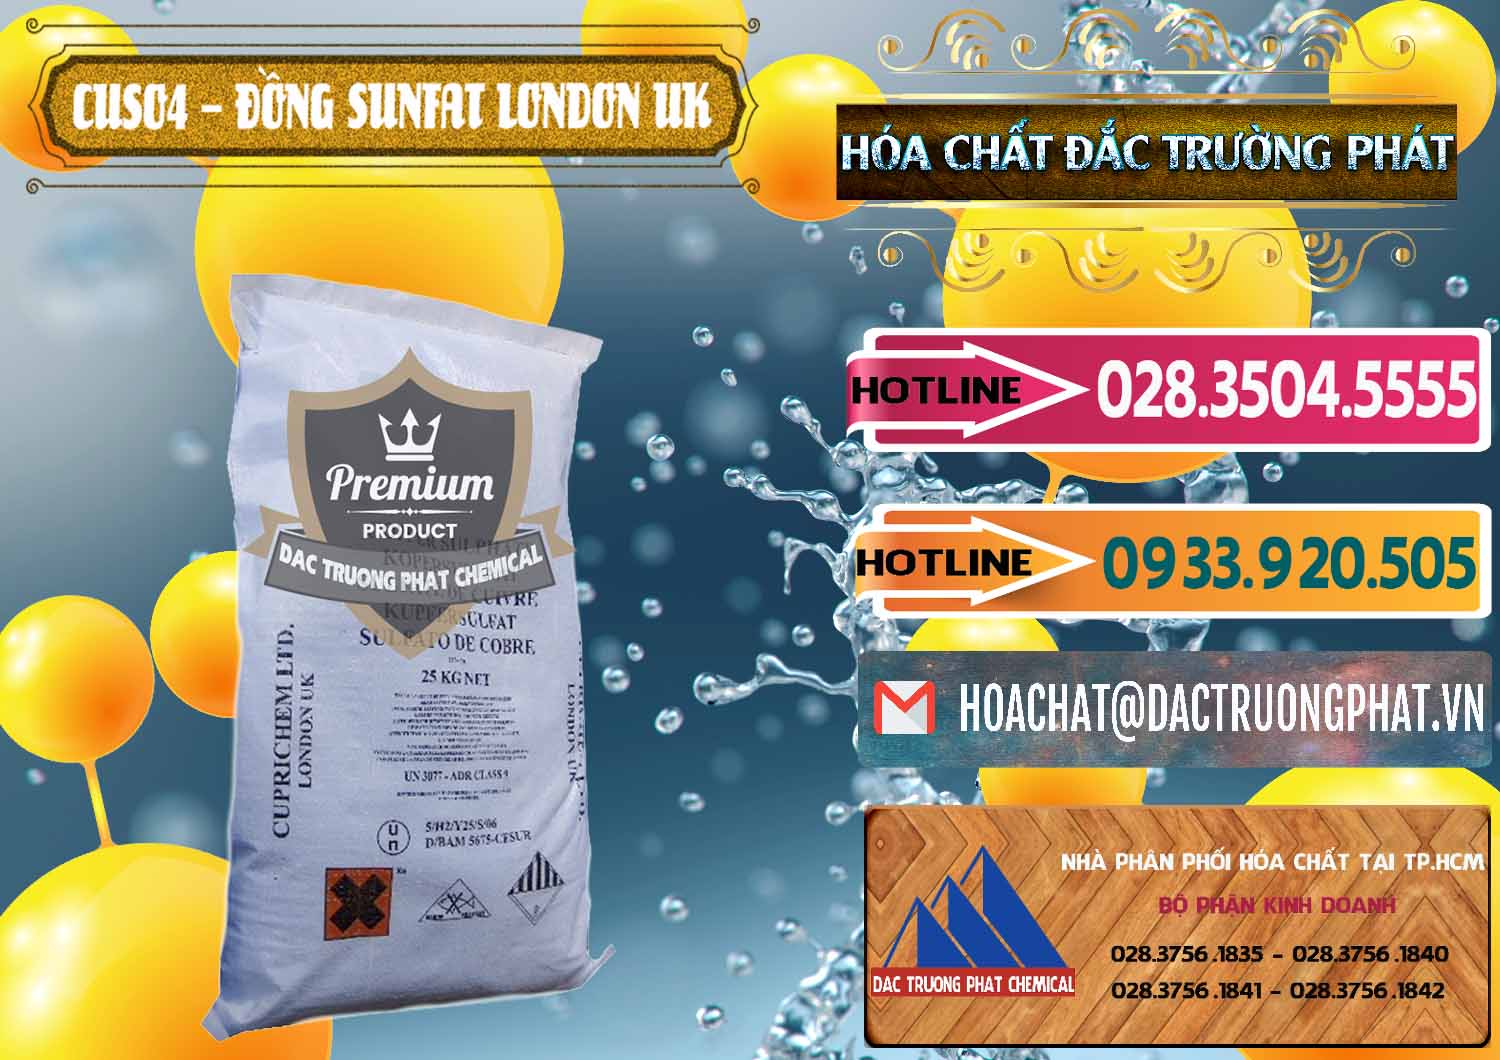 Chuyên phân phối - bán CuSO4 – Đồng Sunfat Anh Uk Kingdoms - 0478 - Cty cung ứng - phân phối hóa chất tại TP.HCM - dactruongphat.vn